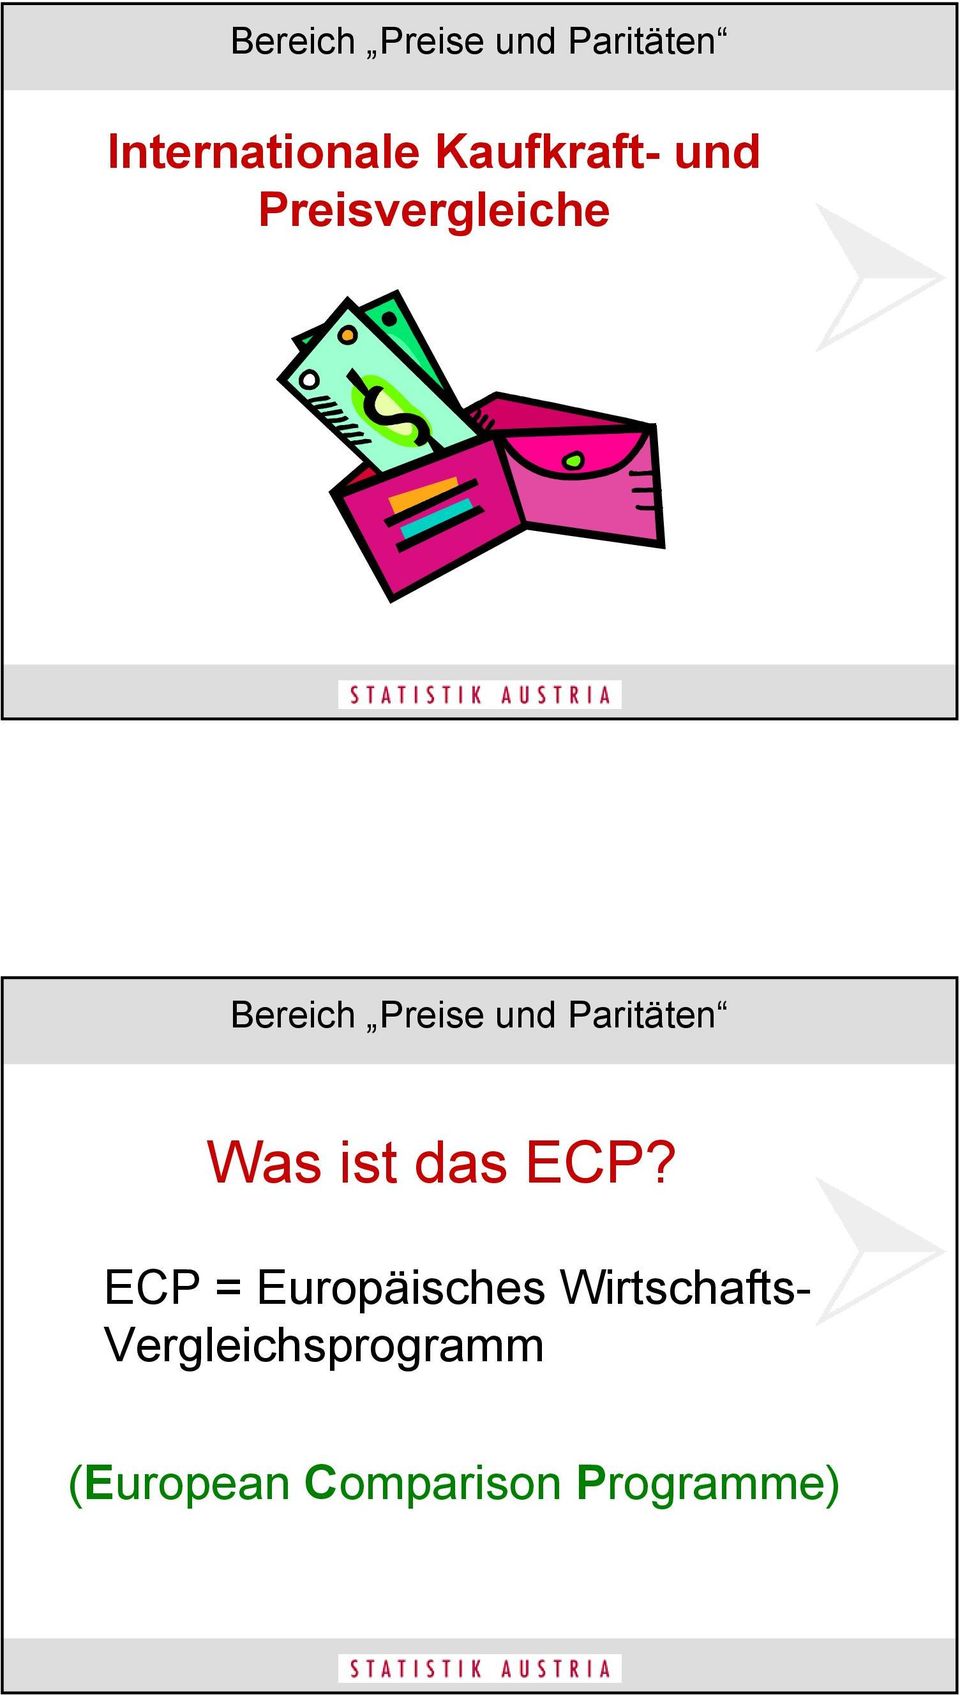 ECP = Europäisches Wirtschafts-